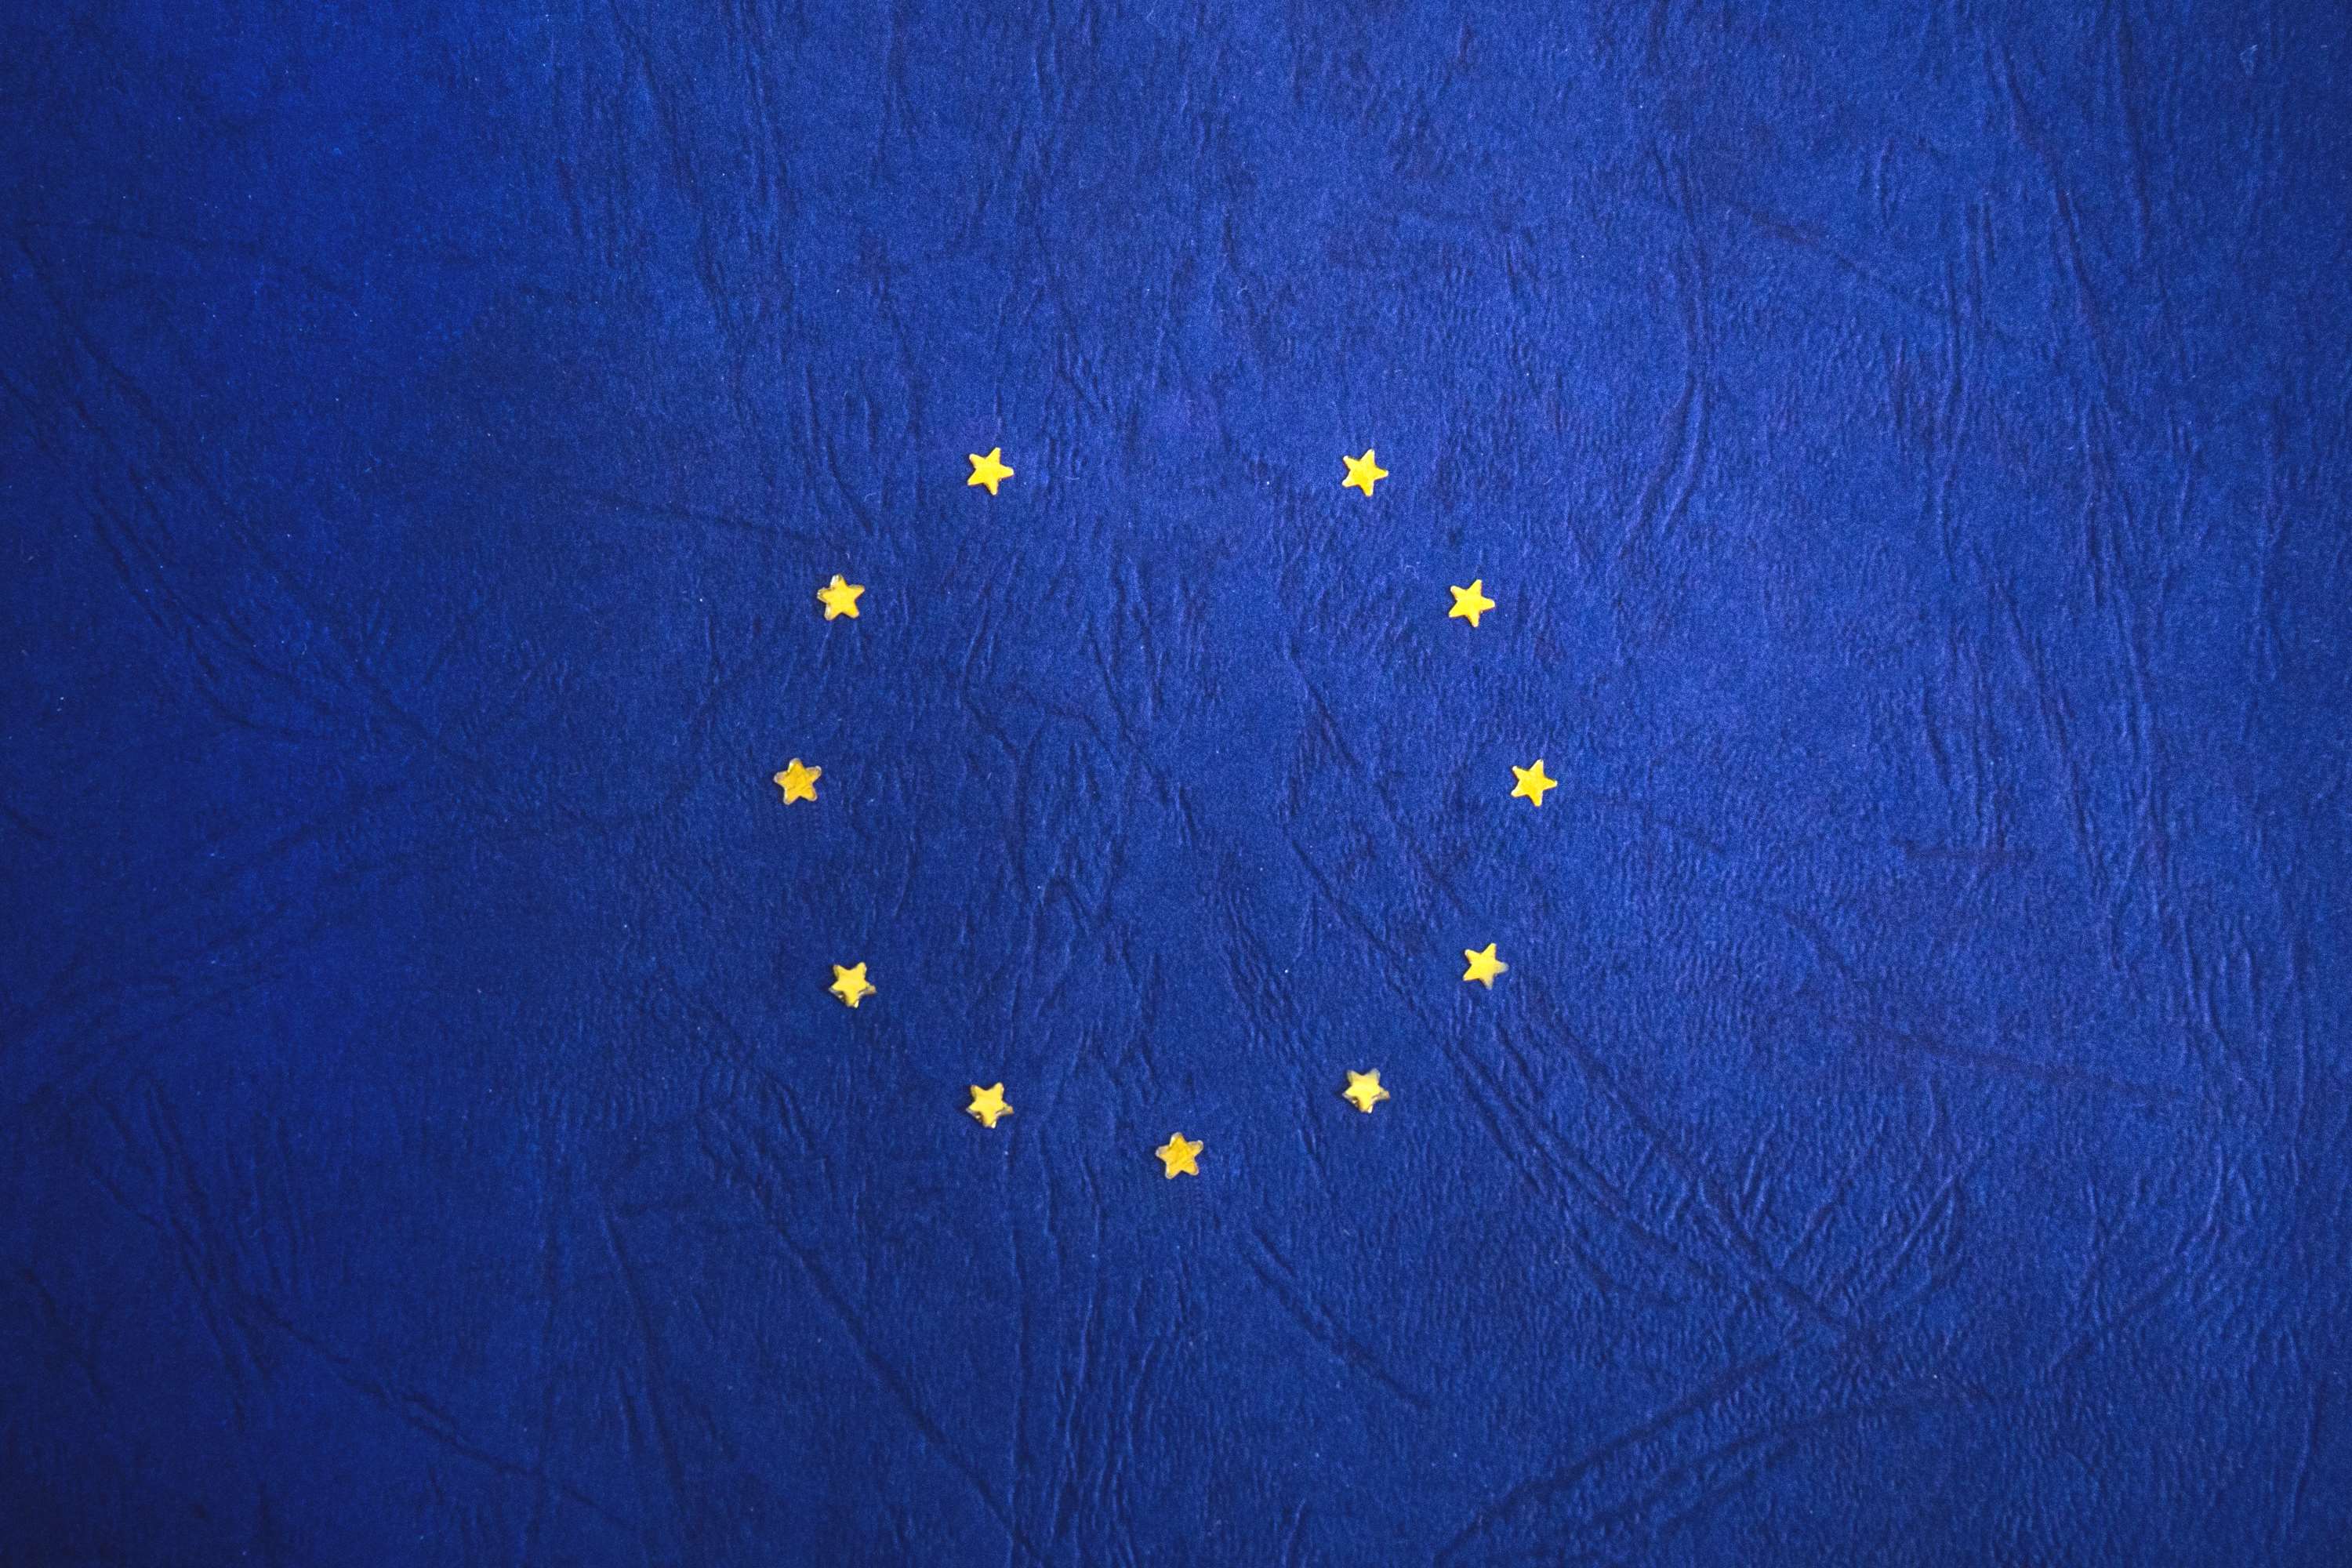 brexit, eu, europe, european flag, european union